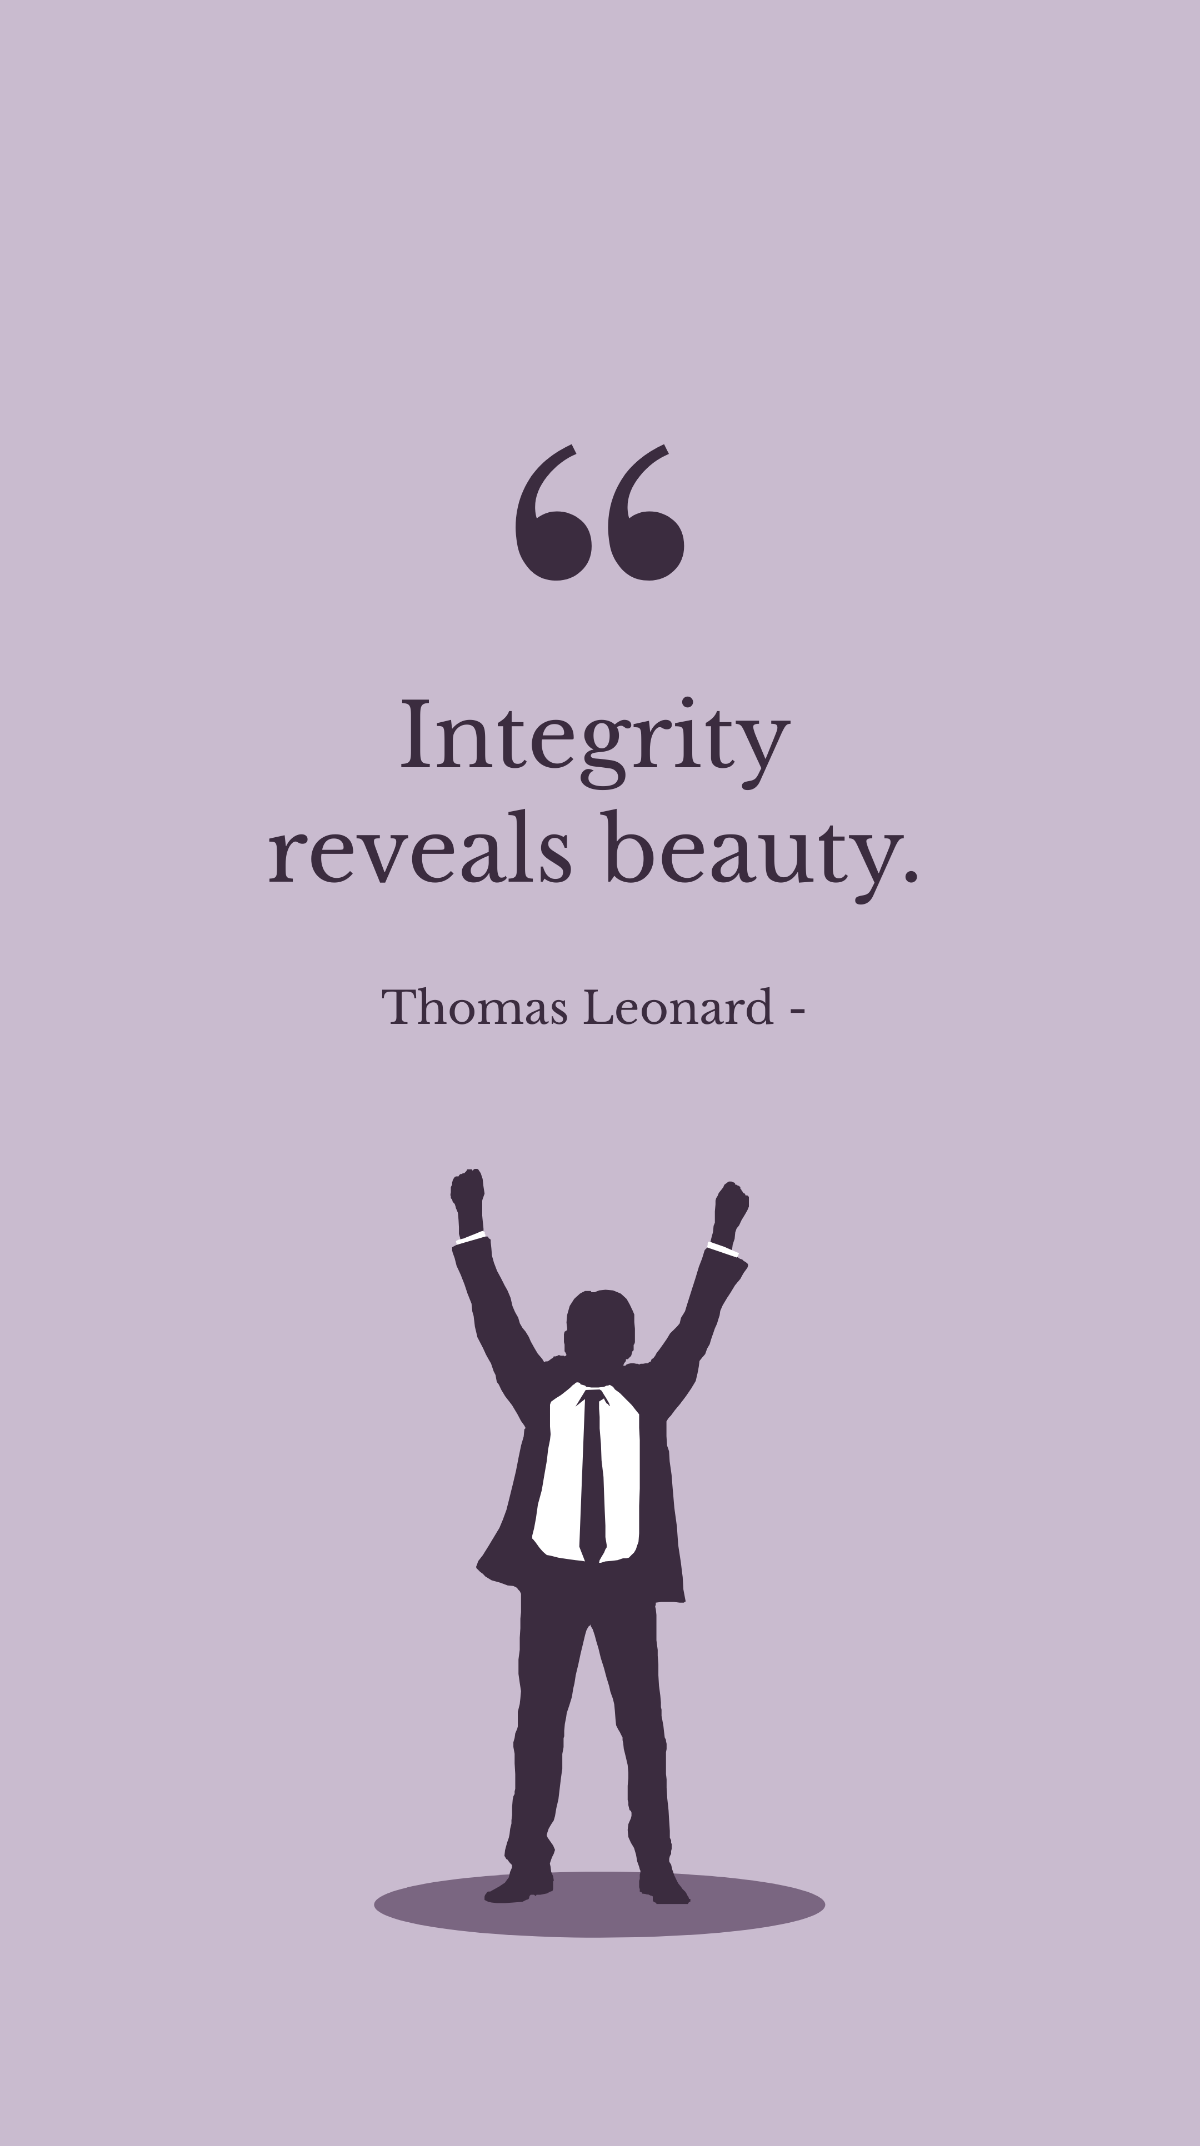 Thomas Leonard - Integrity reveals beauty.